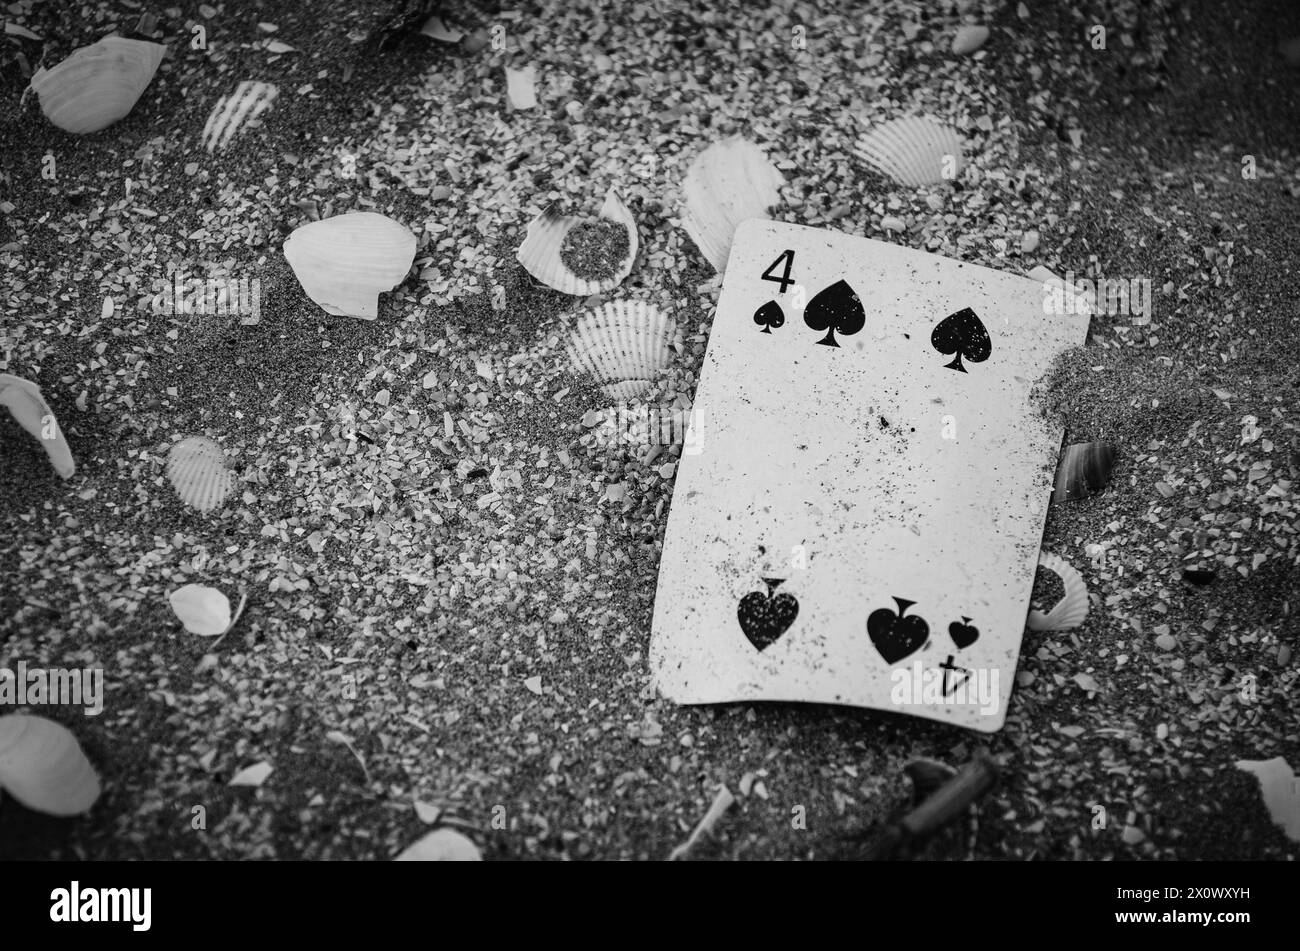 bianco e nero, mazzo di carte soffiate dal vento su una spiaggia, suggerisce la sfortuna di un giocatore d'azzardo Foto Stock